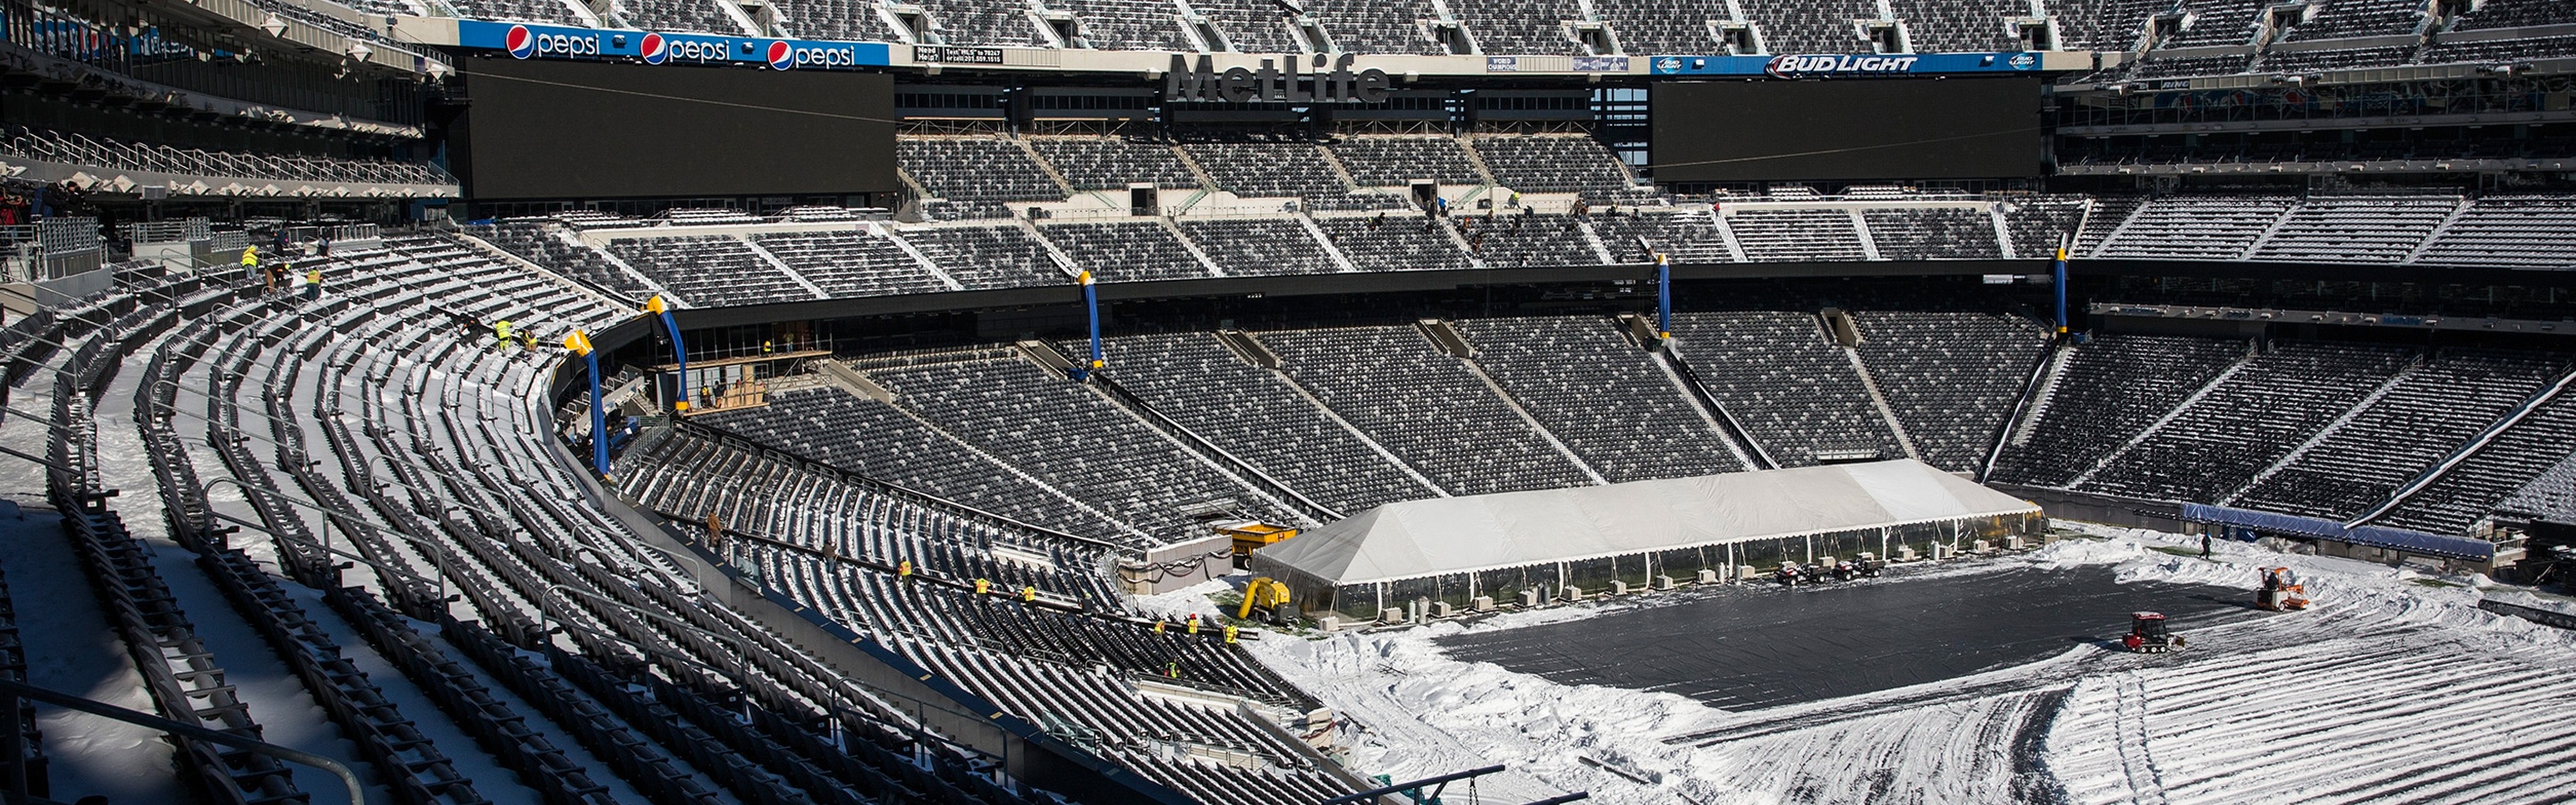 MetLife Full Of Snow-Super Bowl 2014